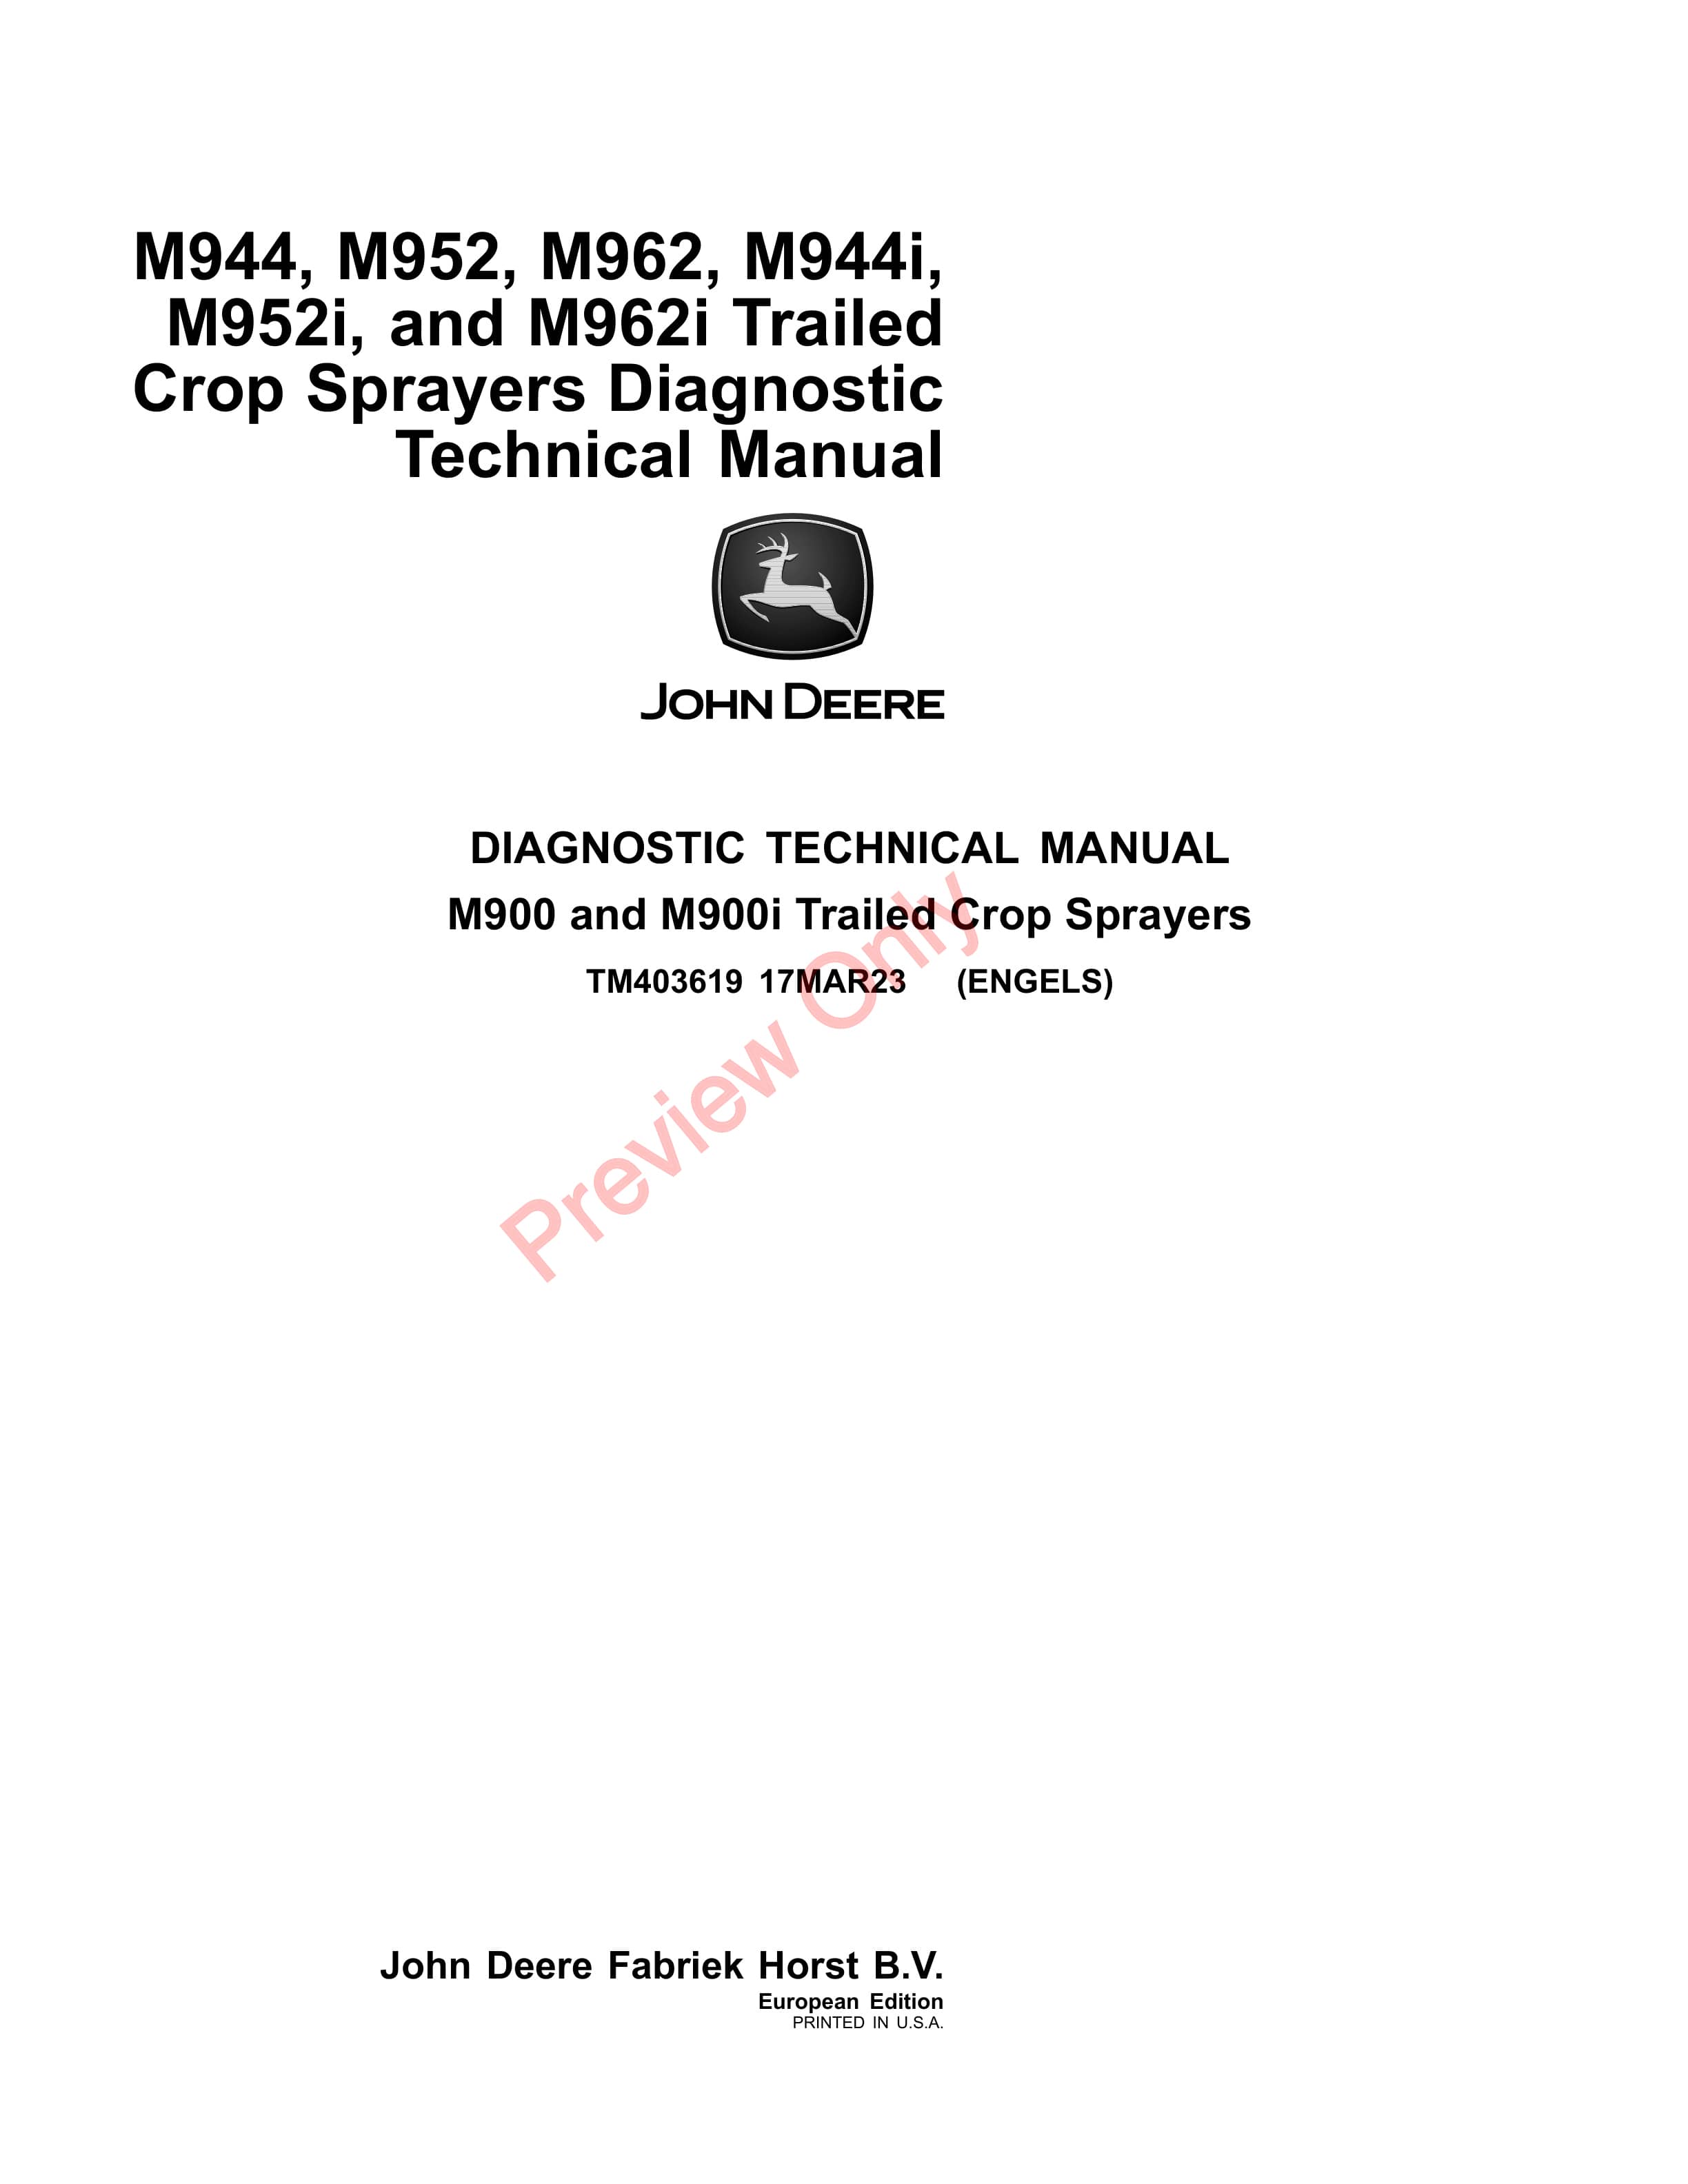 John Deere M944 M952 M962 M944i M952i and M962i Trailed Crop Sprayers Diagnostic Technical Manual TM403619 17MAR23 1